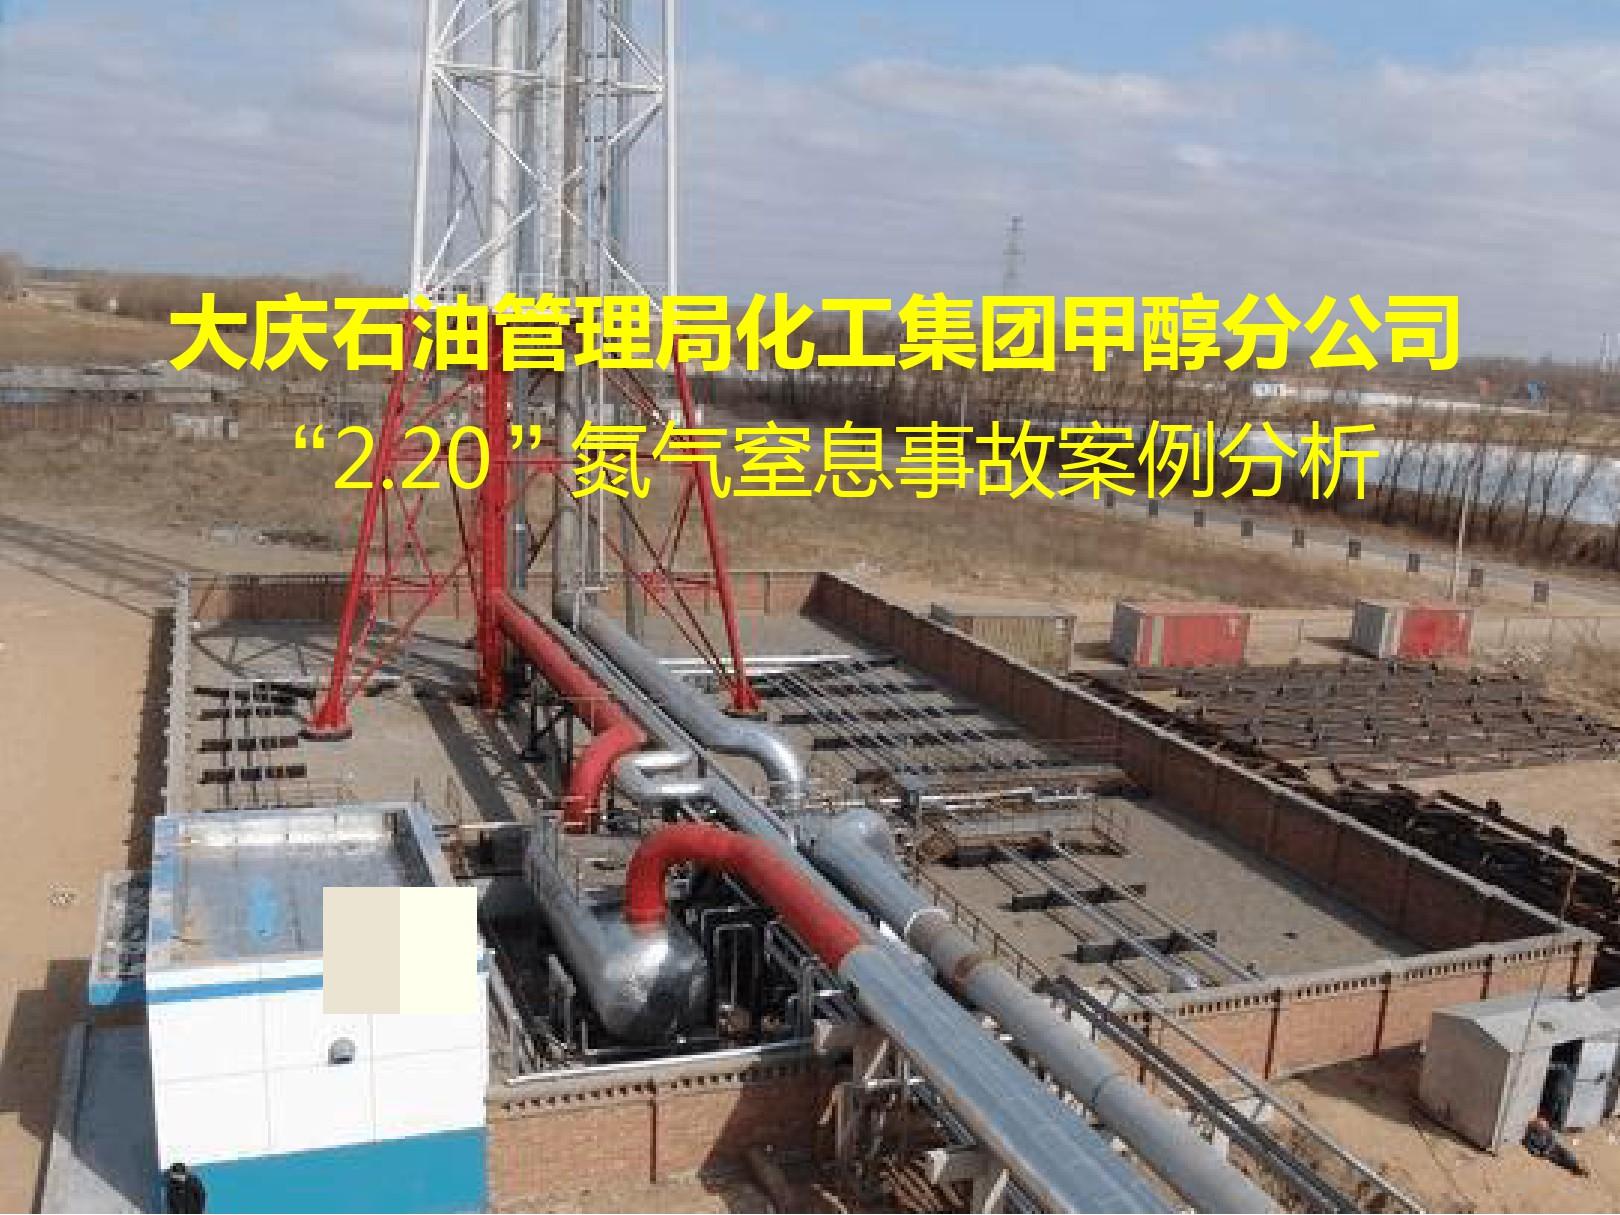 安全经验分享 大庆石油管理局化工集团甲醇分公司2 20氮气窒息事故案例